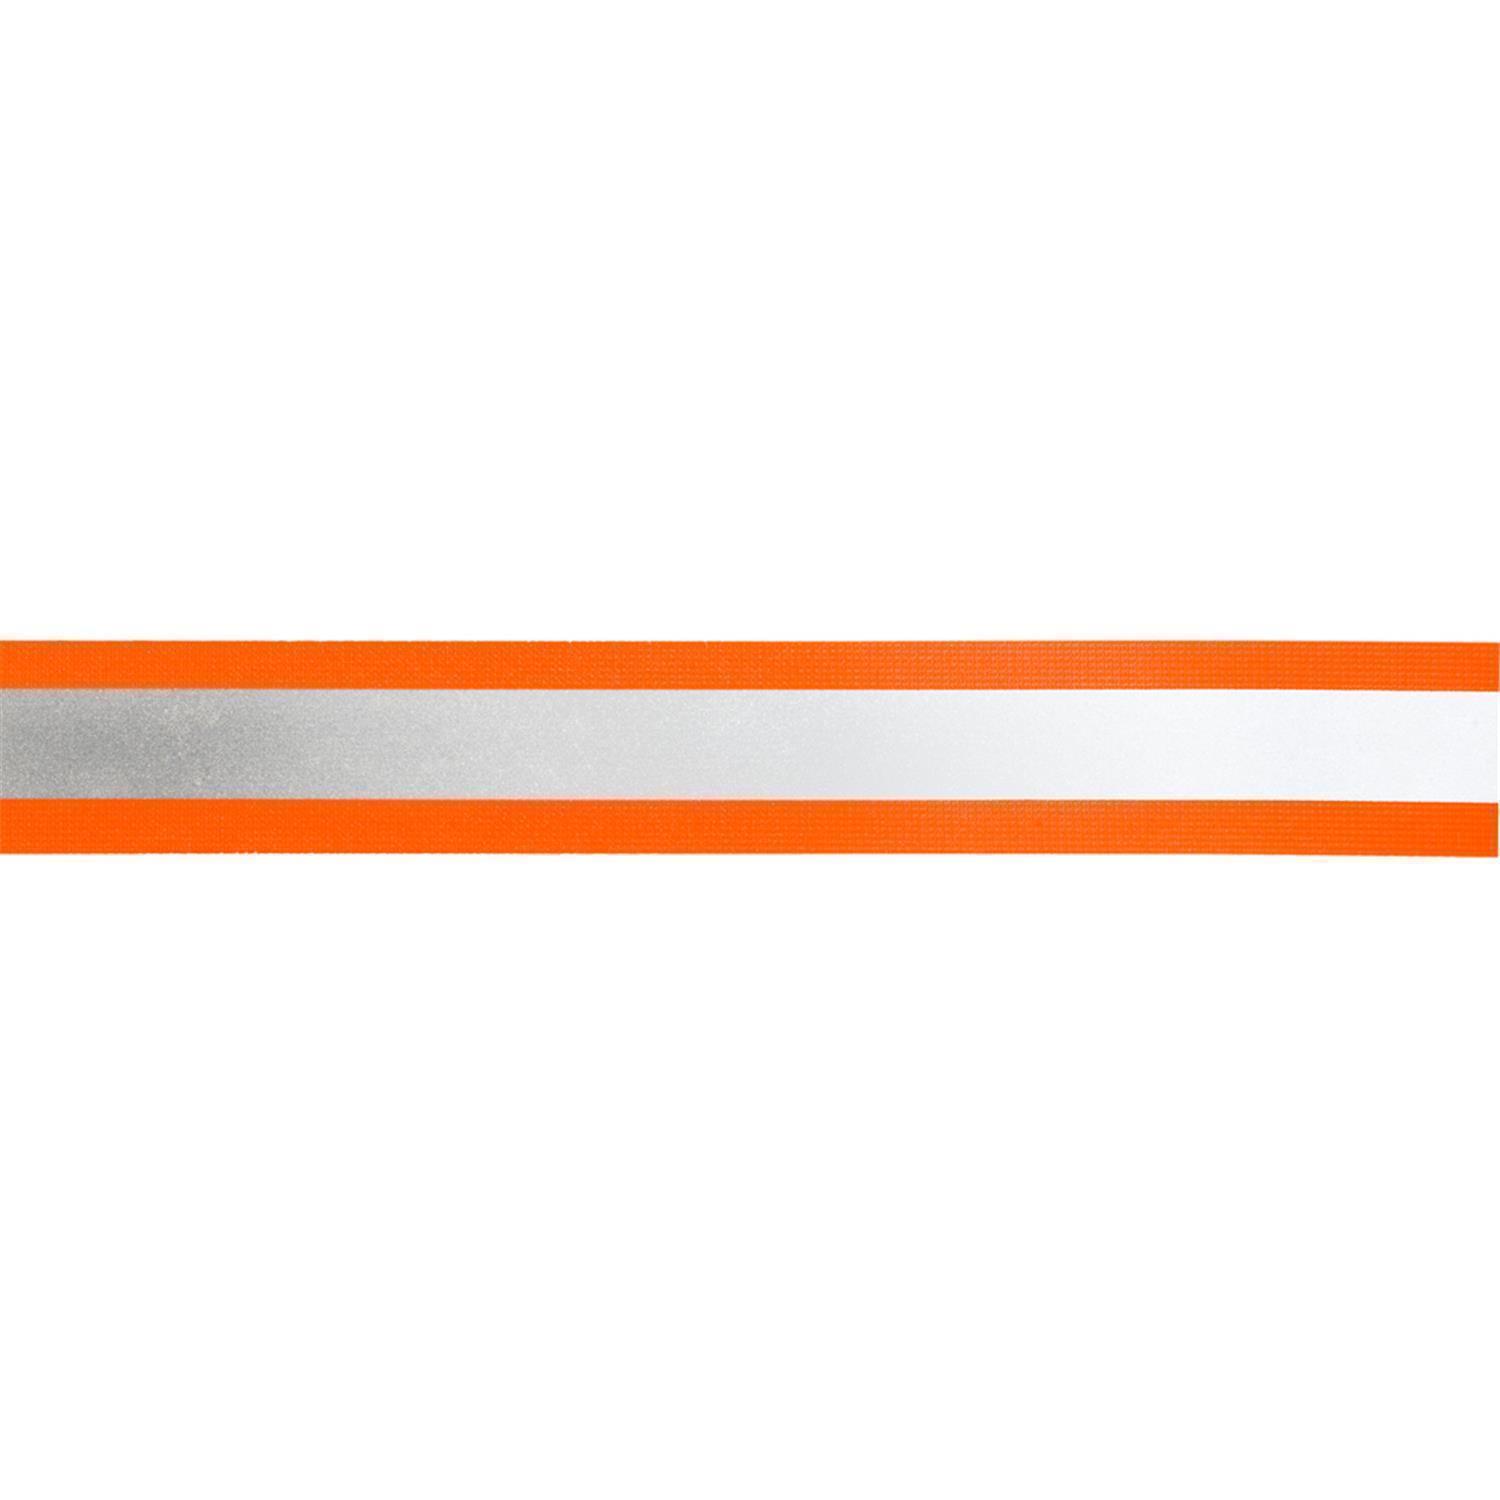 50 m Elastisches Reflektorband 50mm breit orange-silber